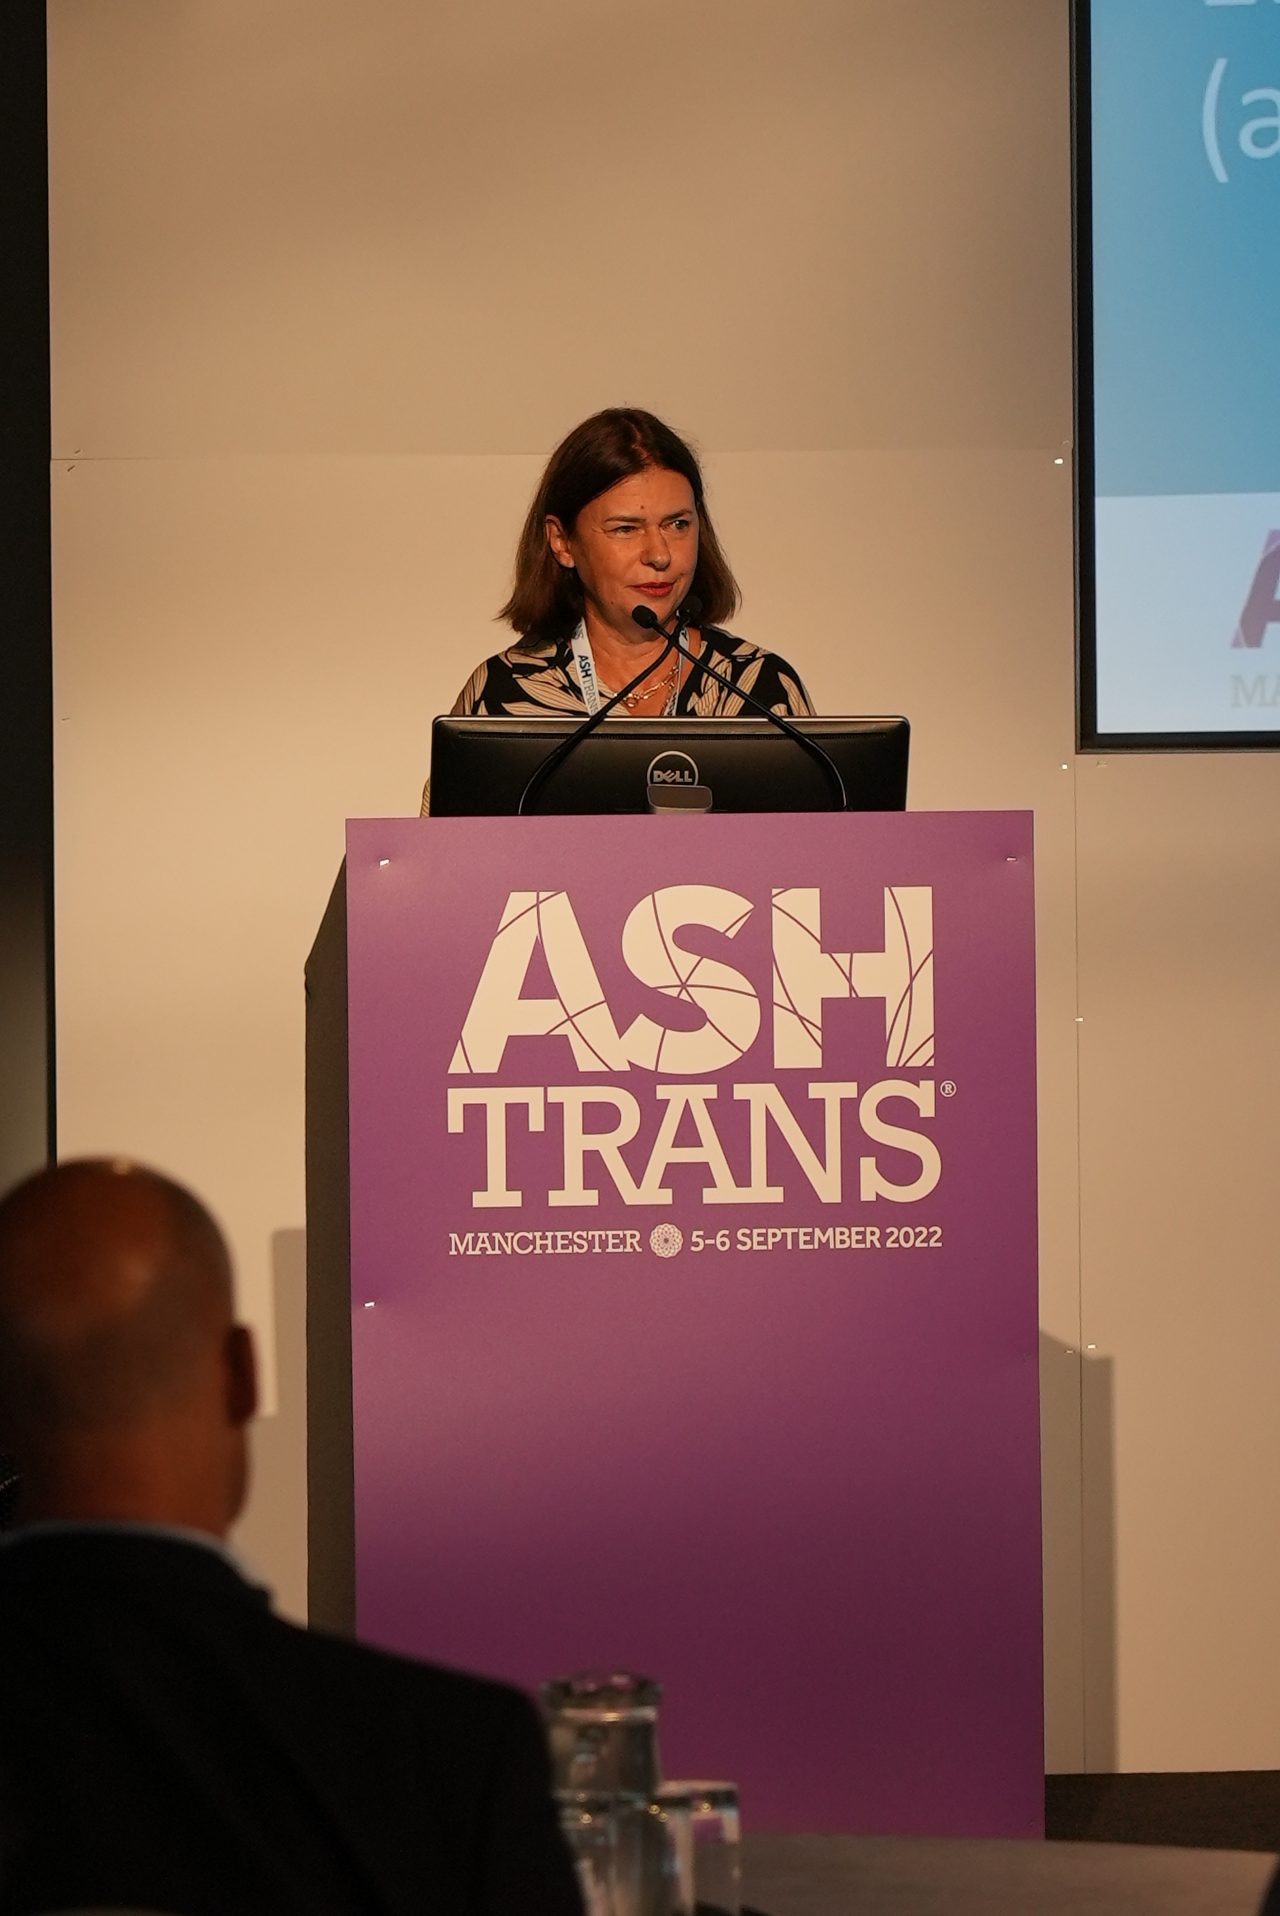 Sylvie Doutres speaking at Ashtrans 2022